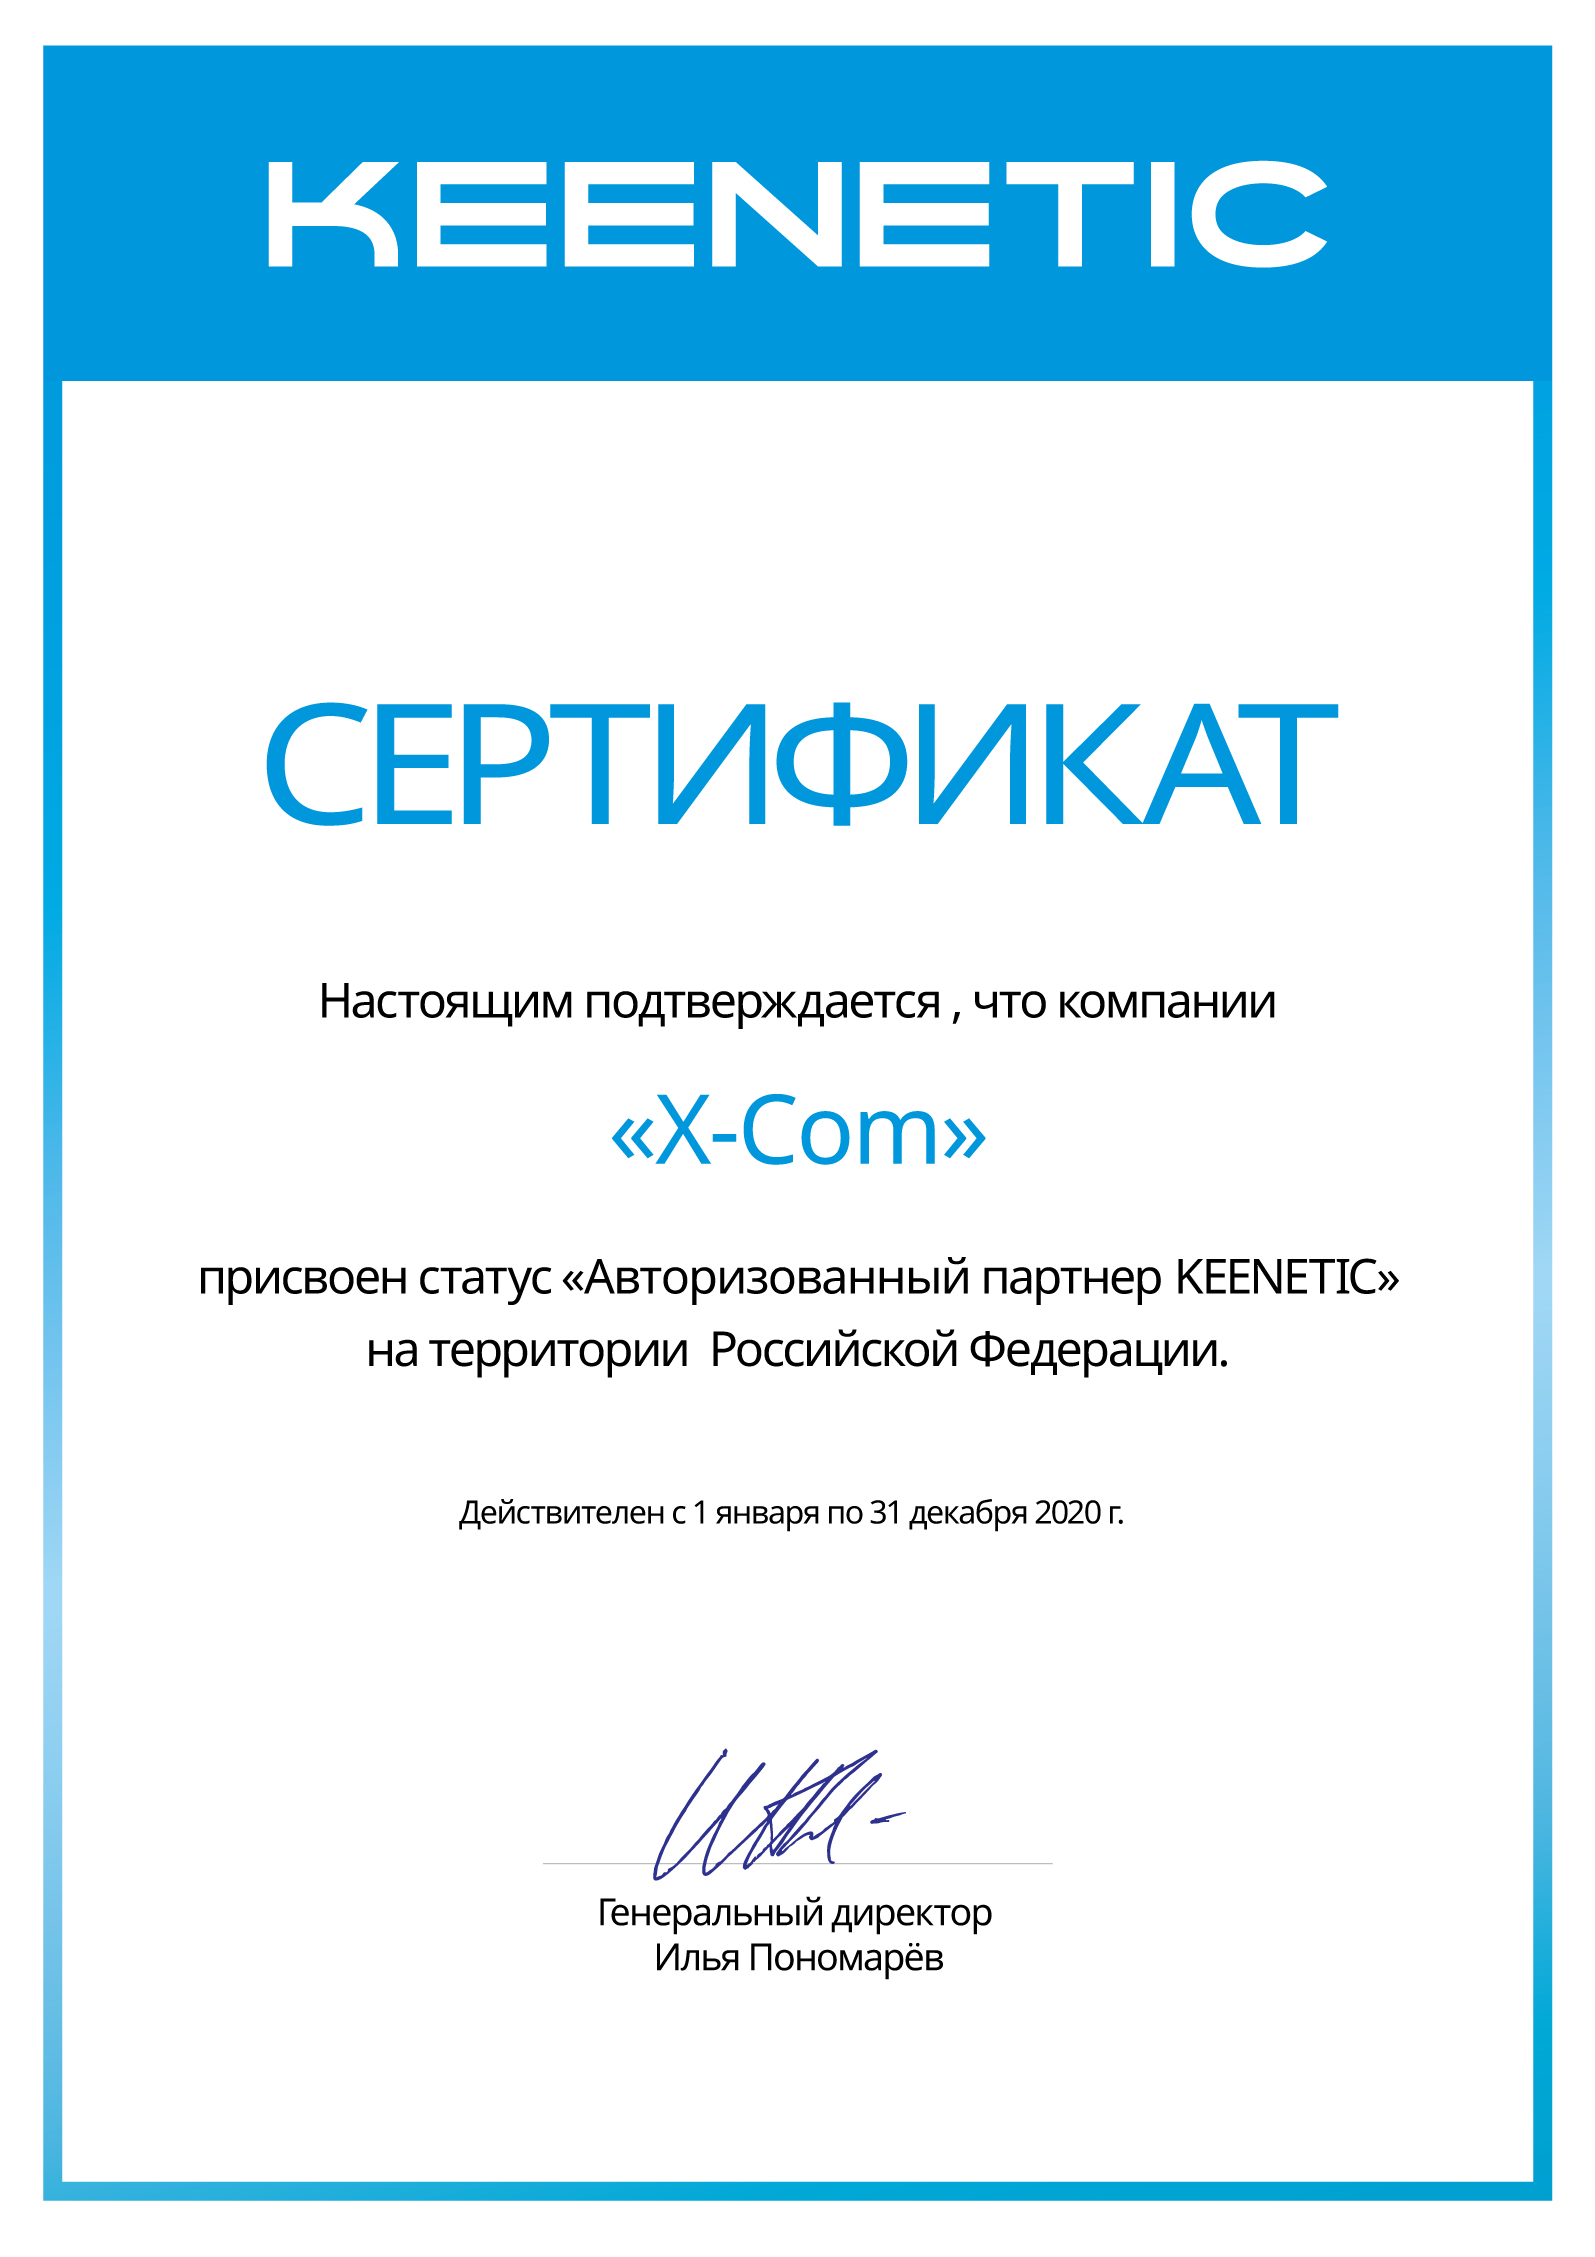 X-Com подтвердила партнерскую авторизацию KEENETIC